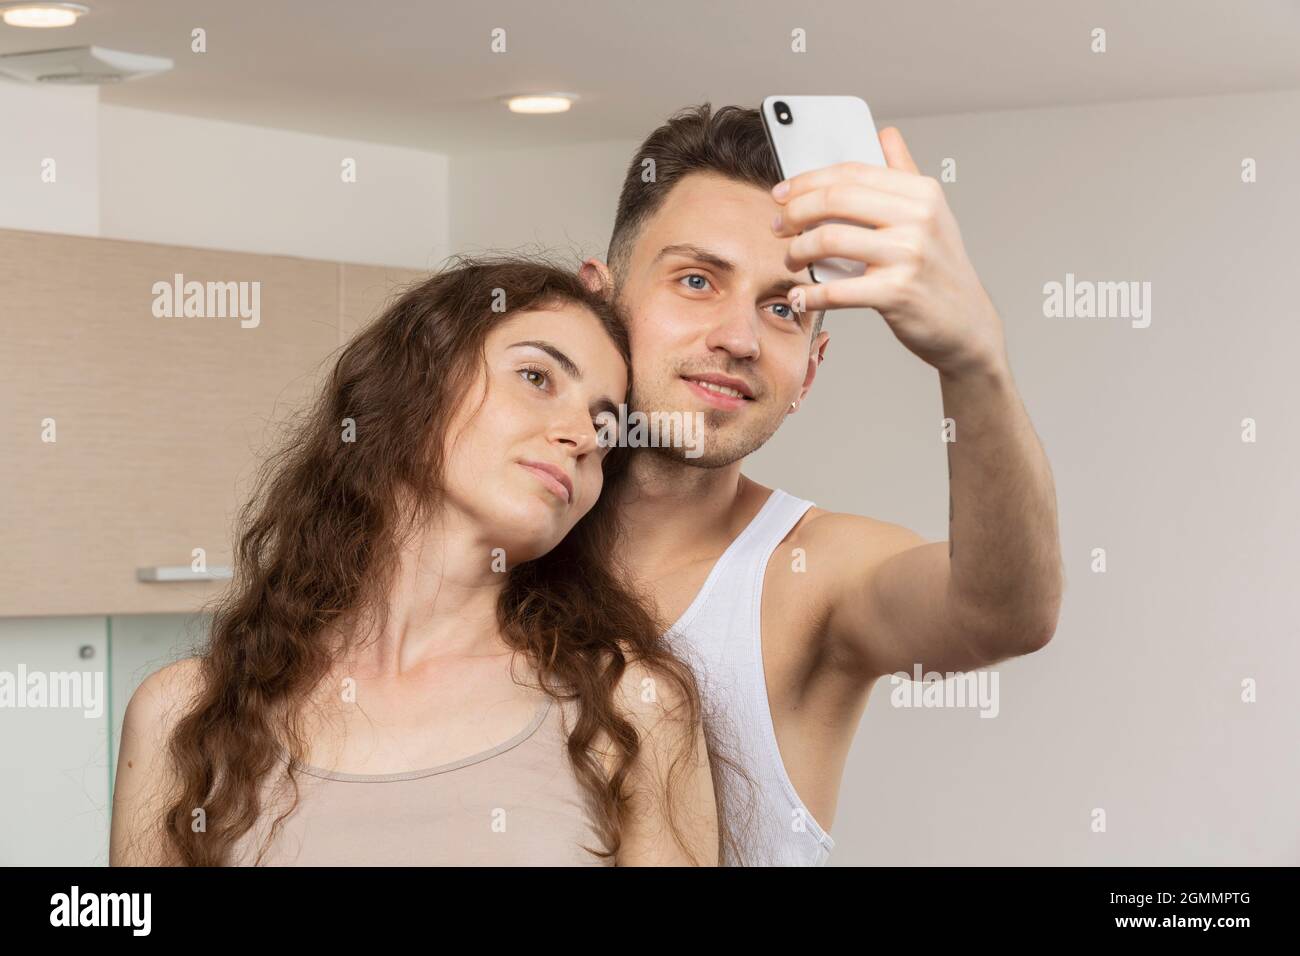 Un jeune couple prend son selfie avec un appareil photo Banque D'Images